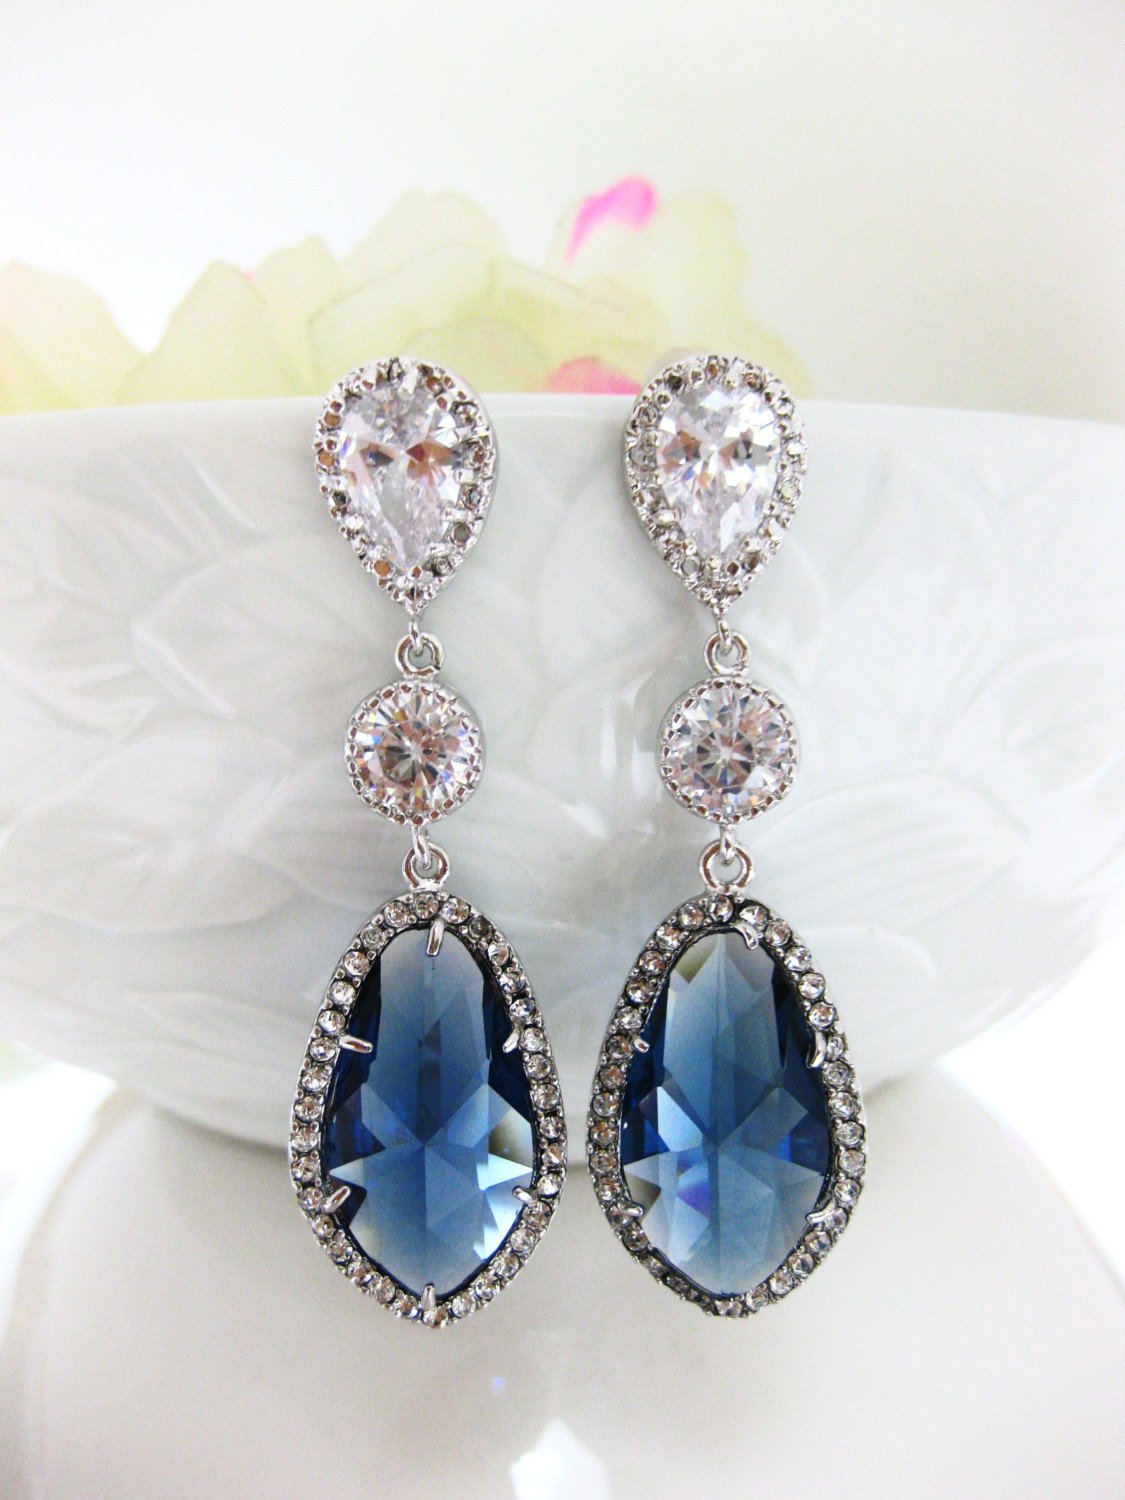 Montana Blue Teardrop Earrings Bridal Earrings Wedding Jewelry Blue Earrings Cubic Zirconia Bridesmaids Gift (e055)